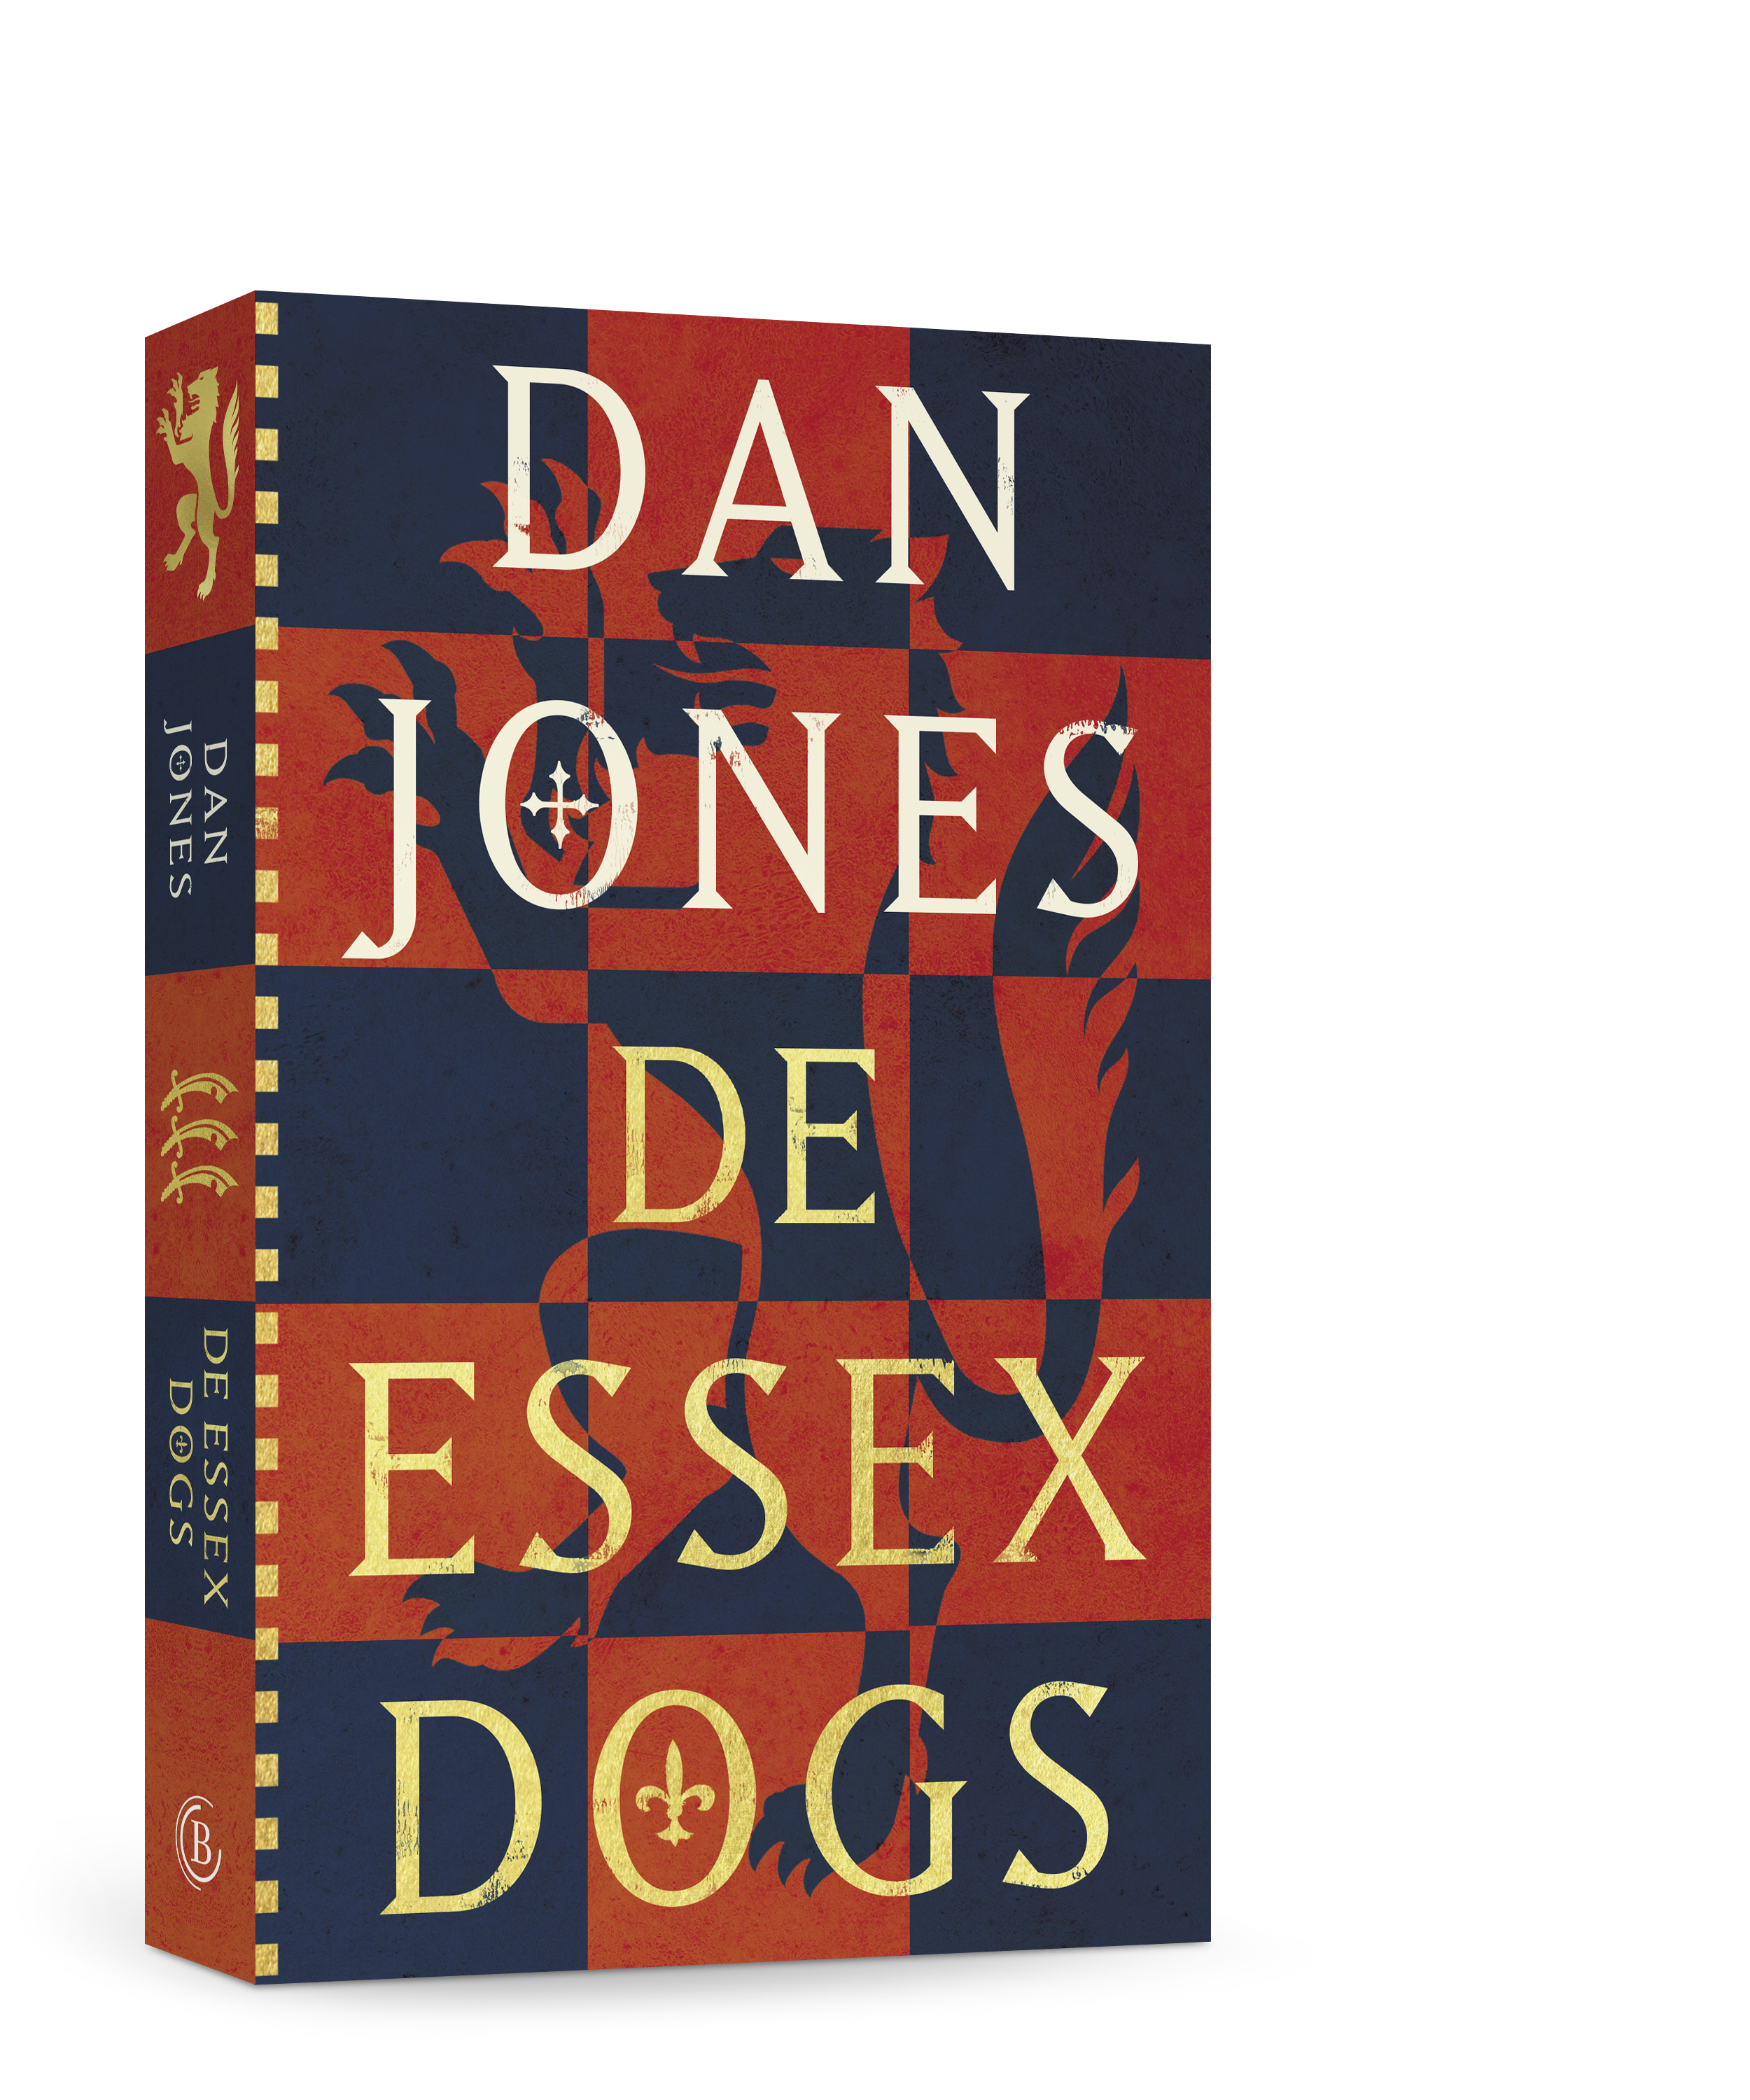 De Essex dogs - Dan Jones